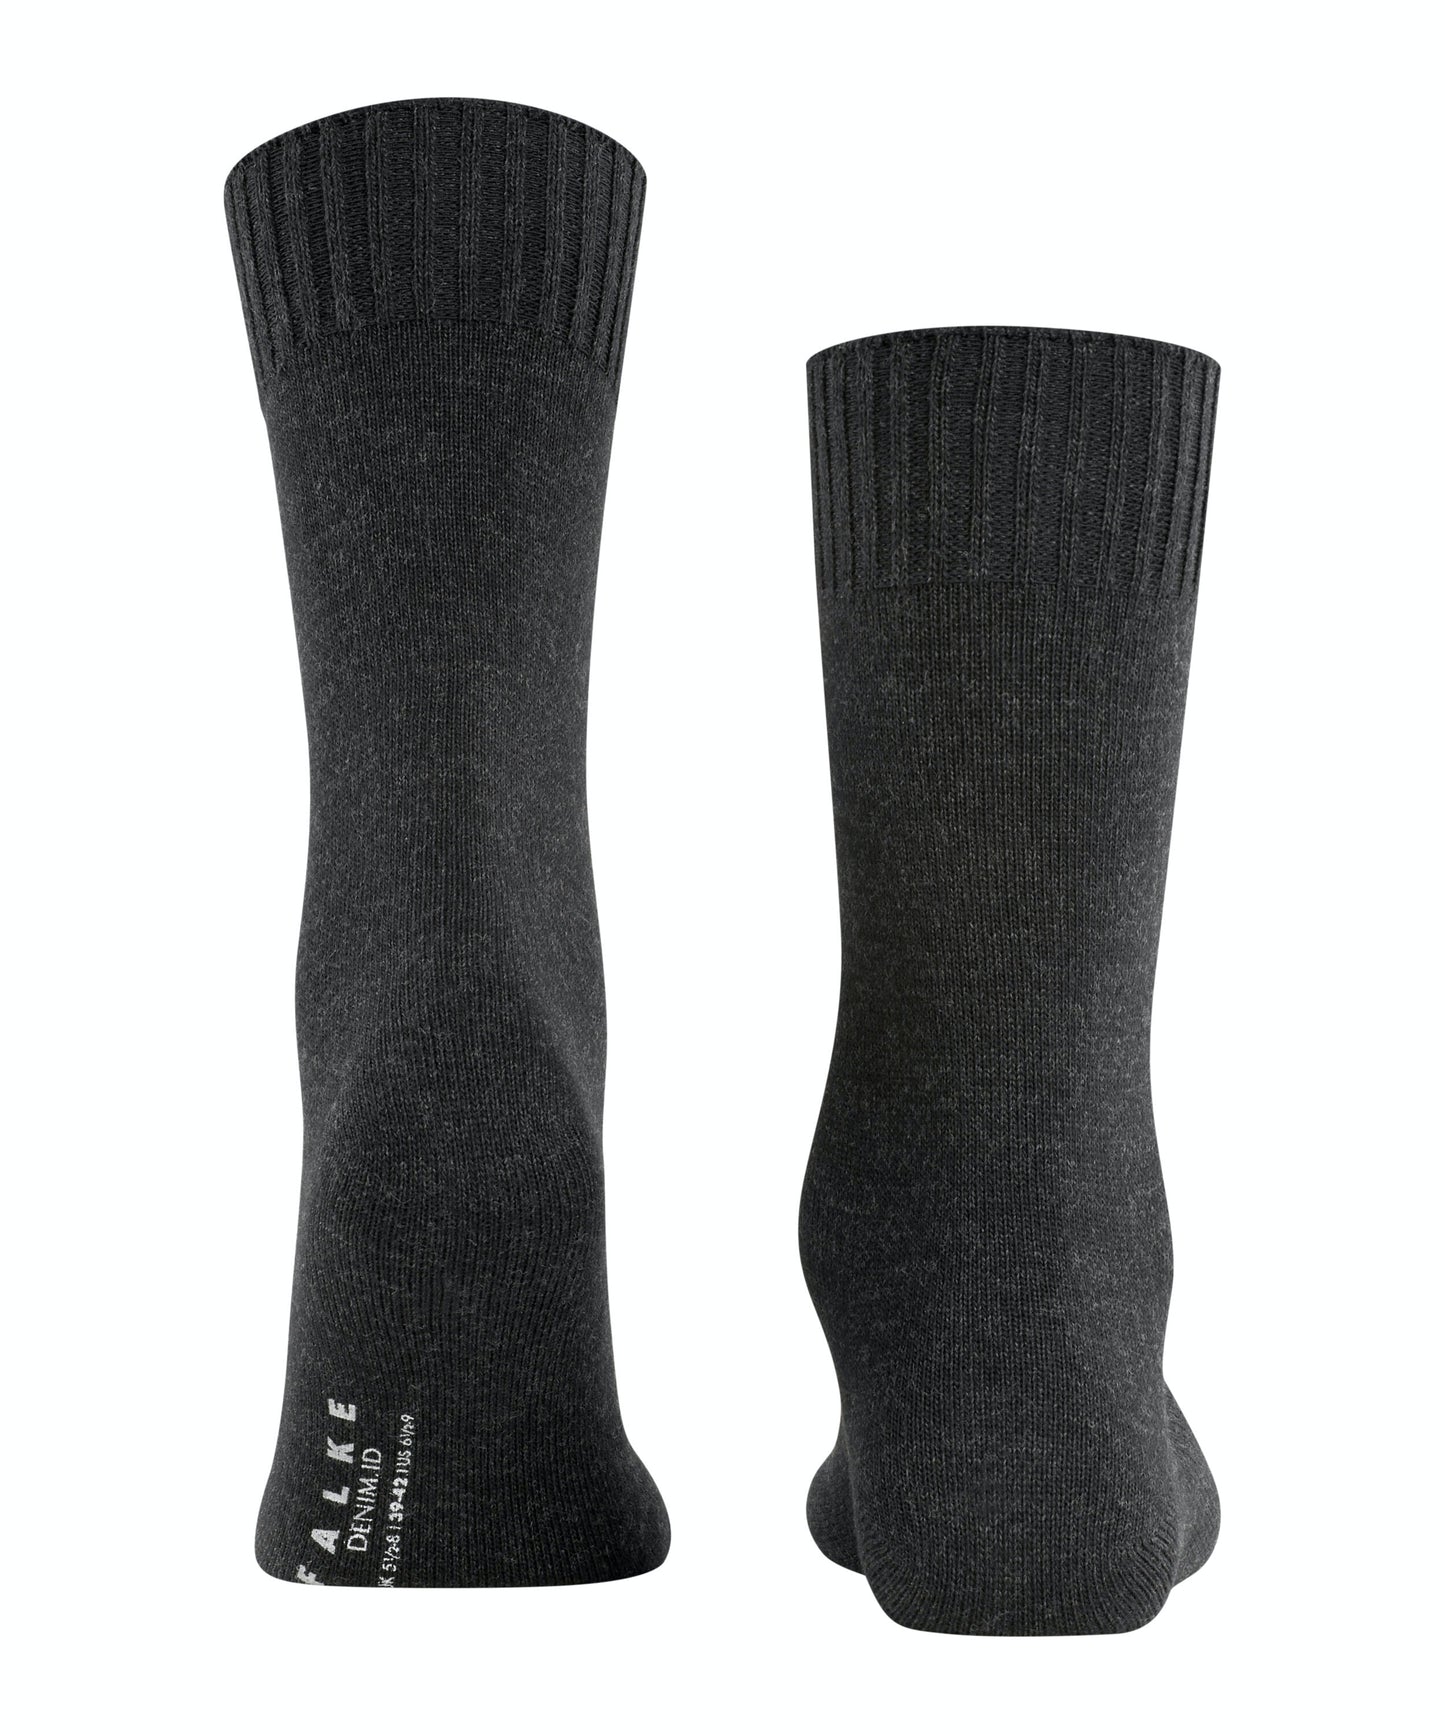 FALKE DENIM ID Socks in Anthracite